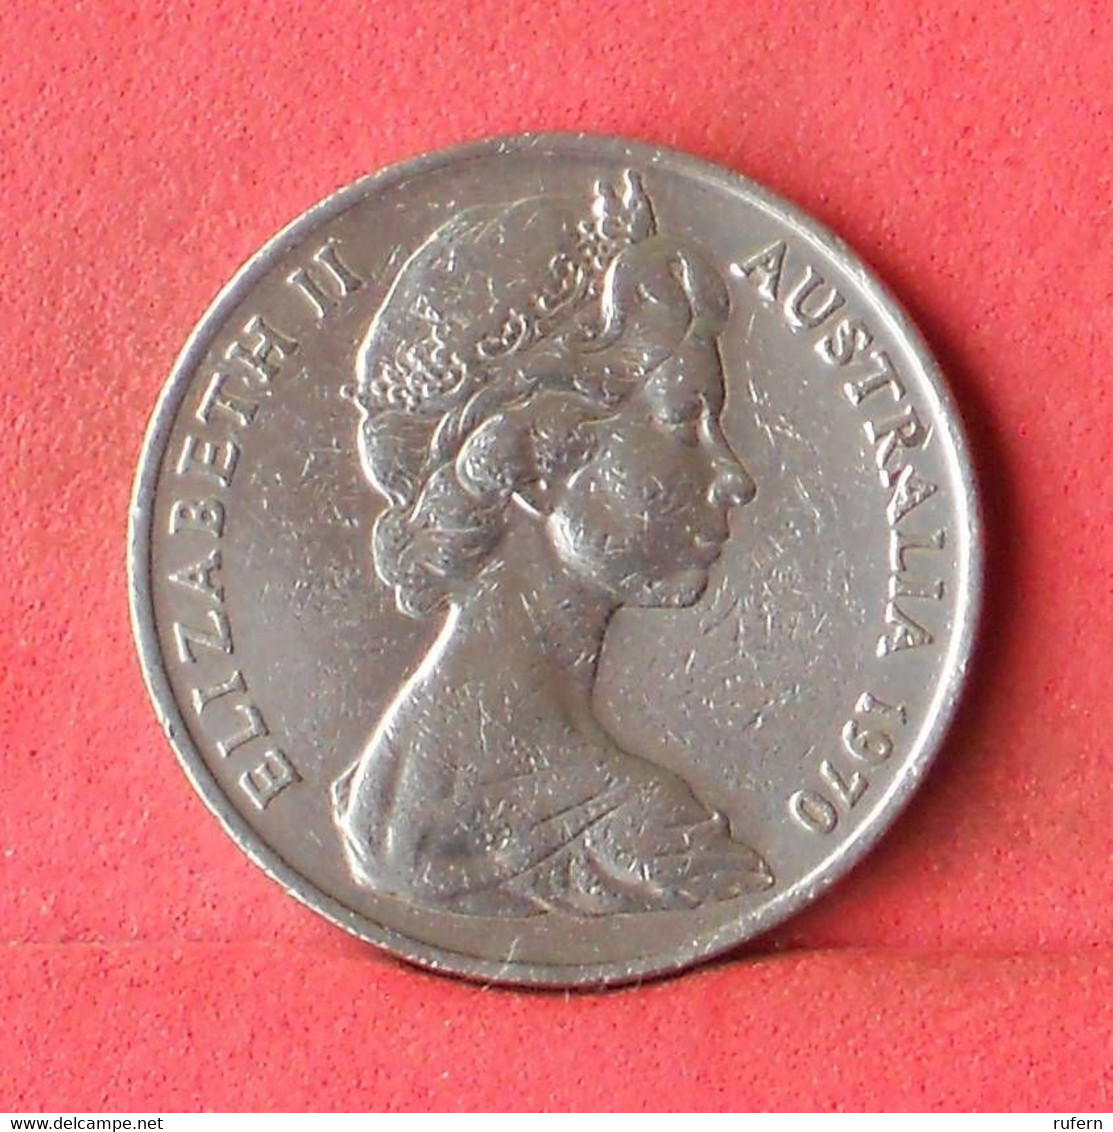 AUSTRALIA 20 CENTS 1970 -    KM# 66 - (Nº39231) - 20 Cents